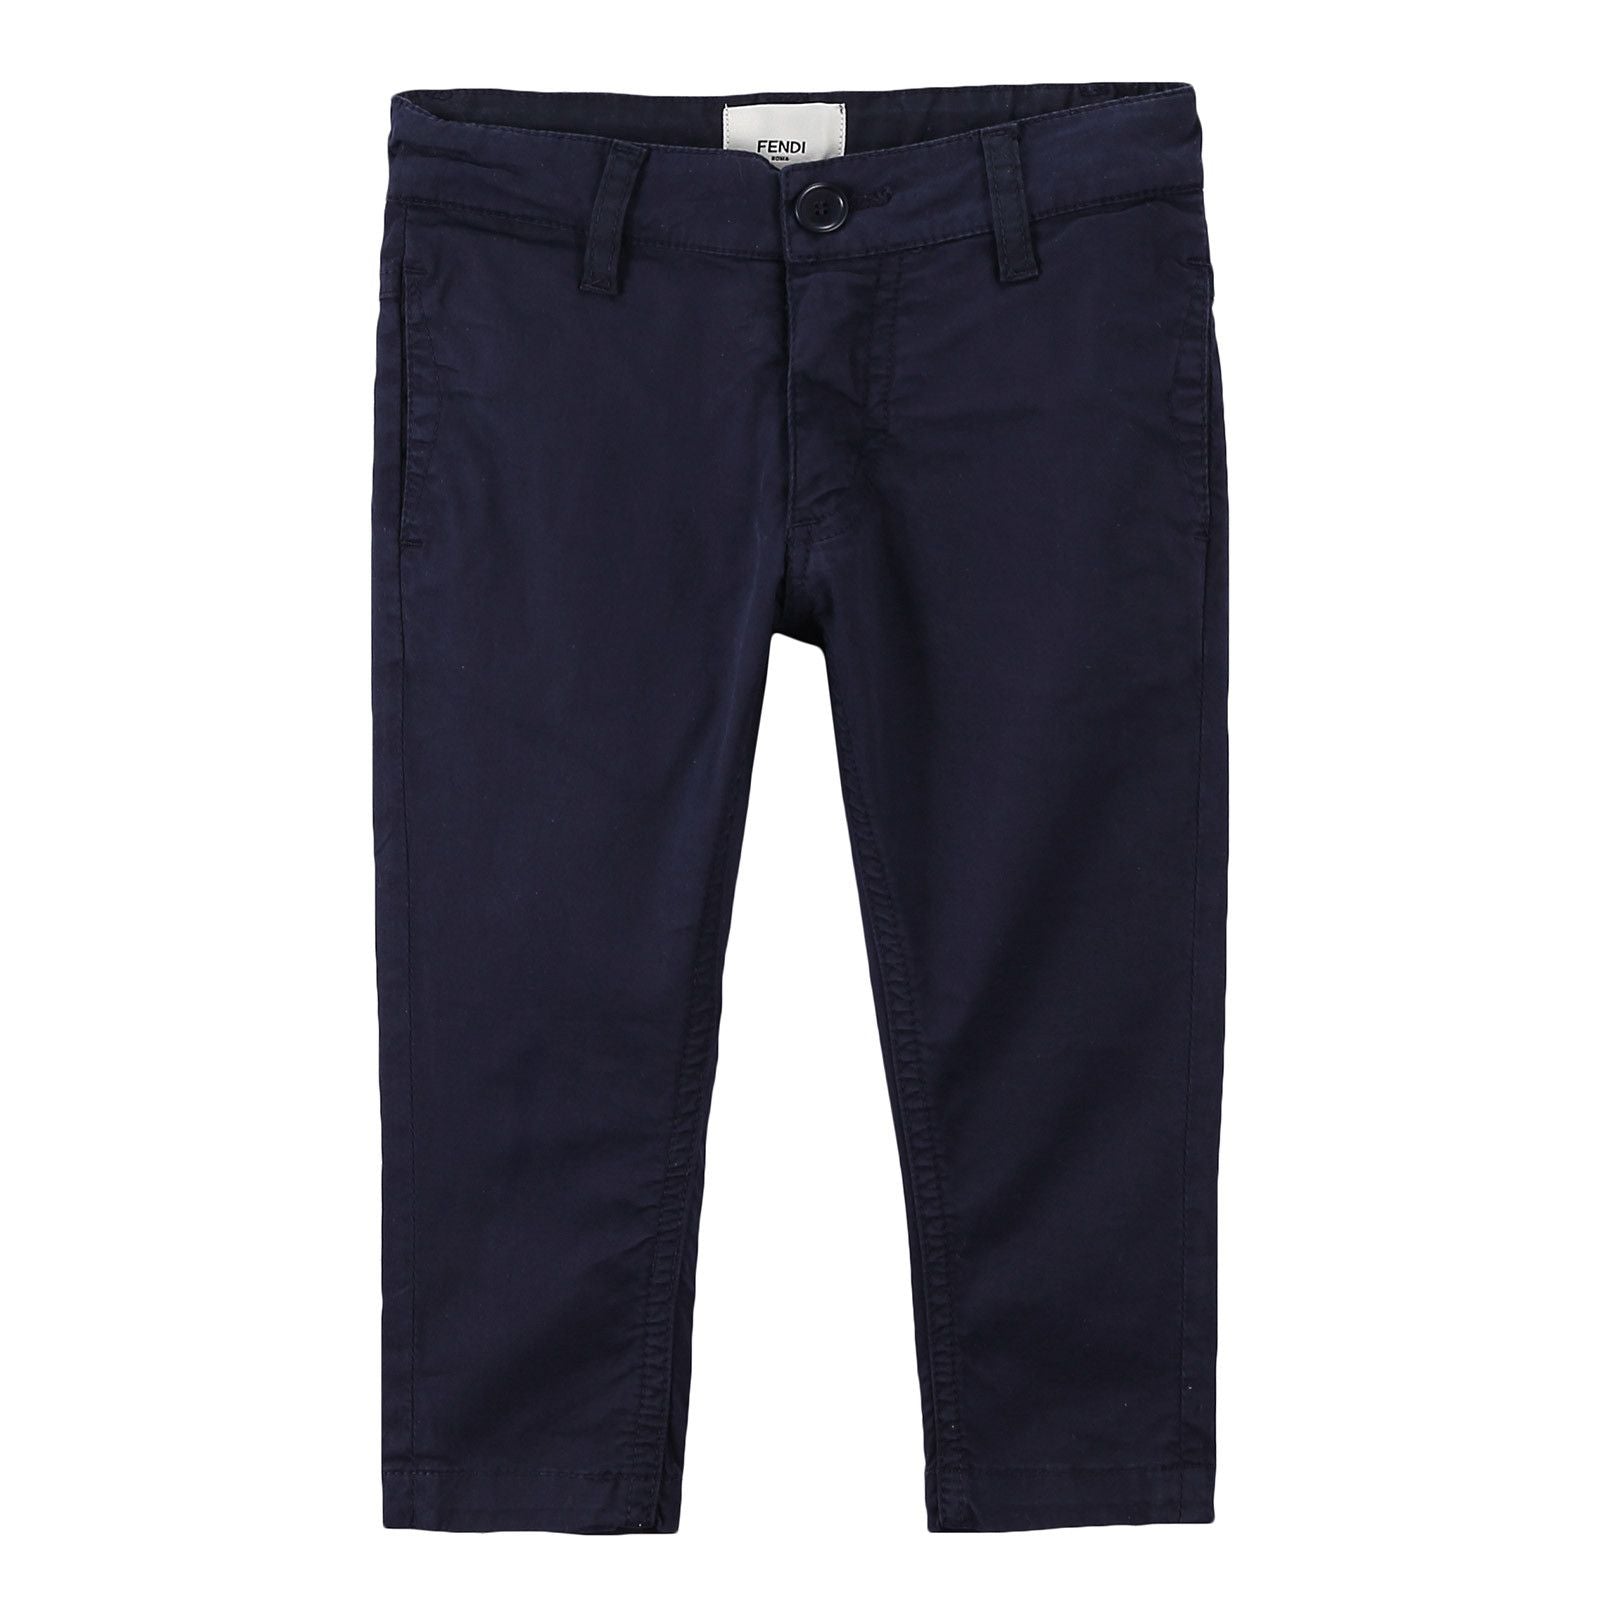 Boys Navy Blue Cotton Trousers - CÉMAROSE | Children's Fashion Store - 1